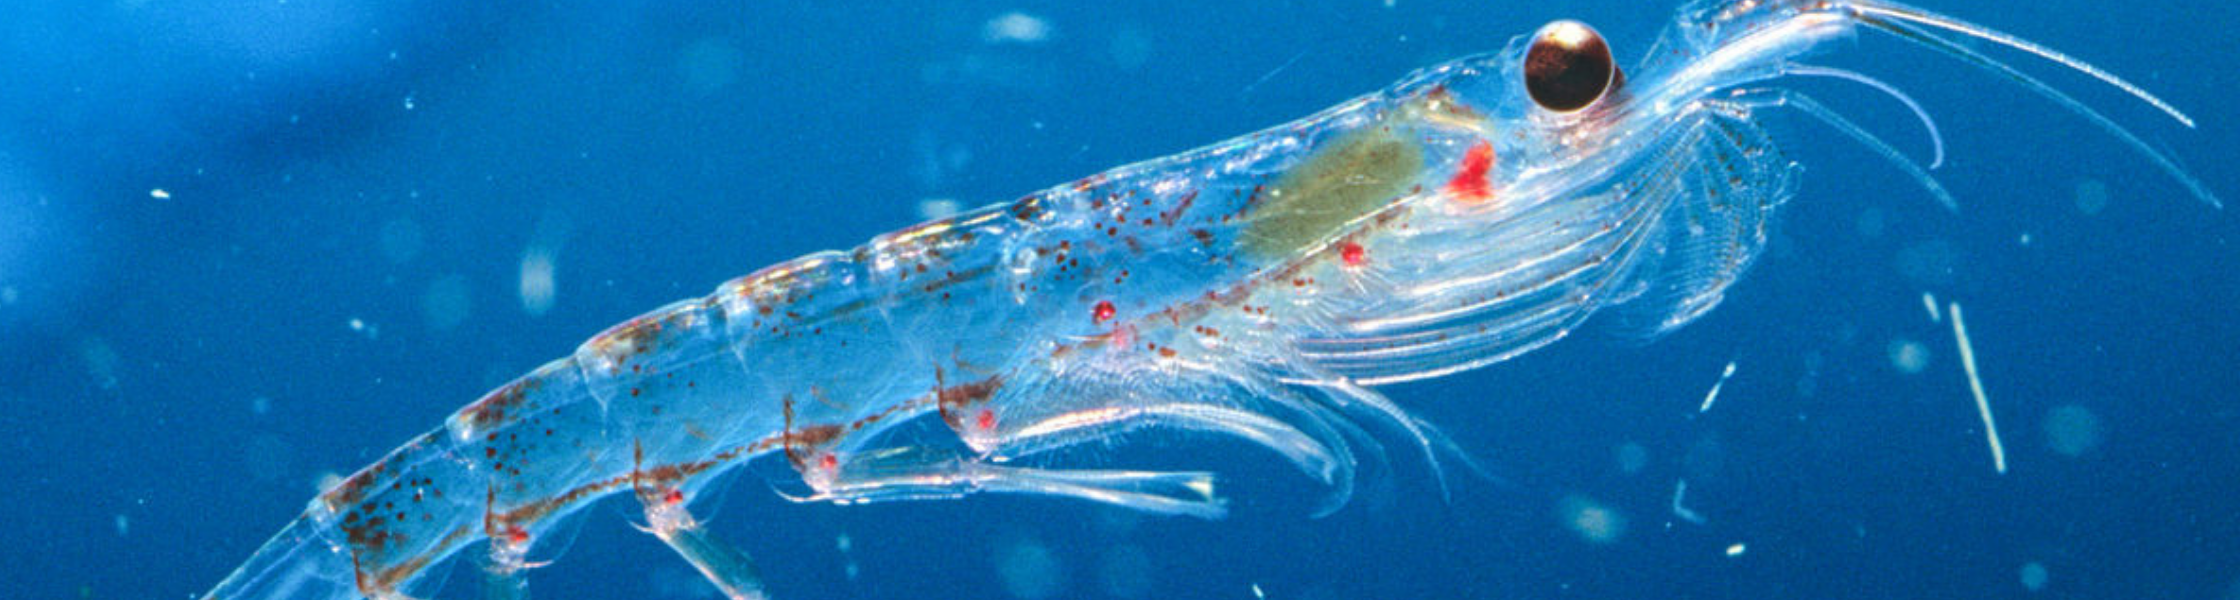 Antarktický krill je malý korýš, jehož druh obýval téměř celý jižní oceán.